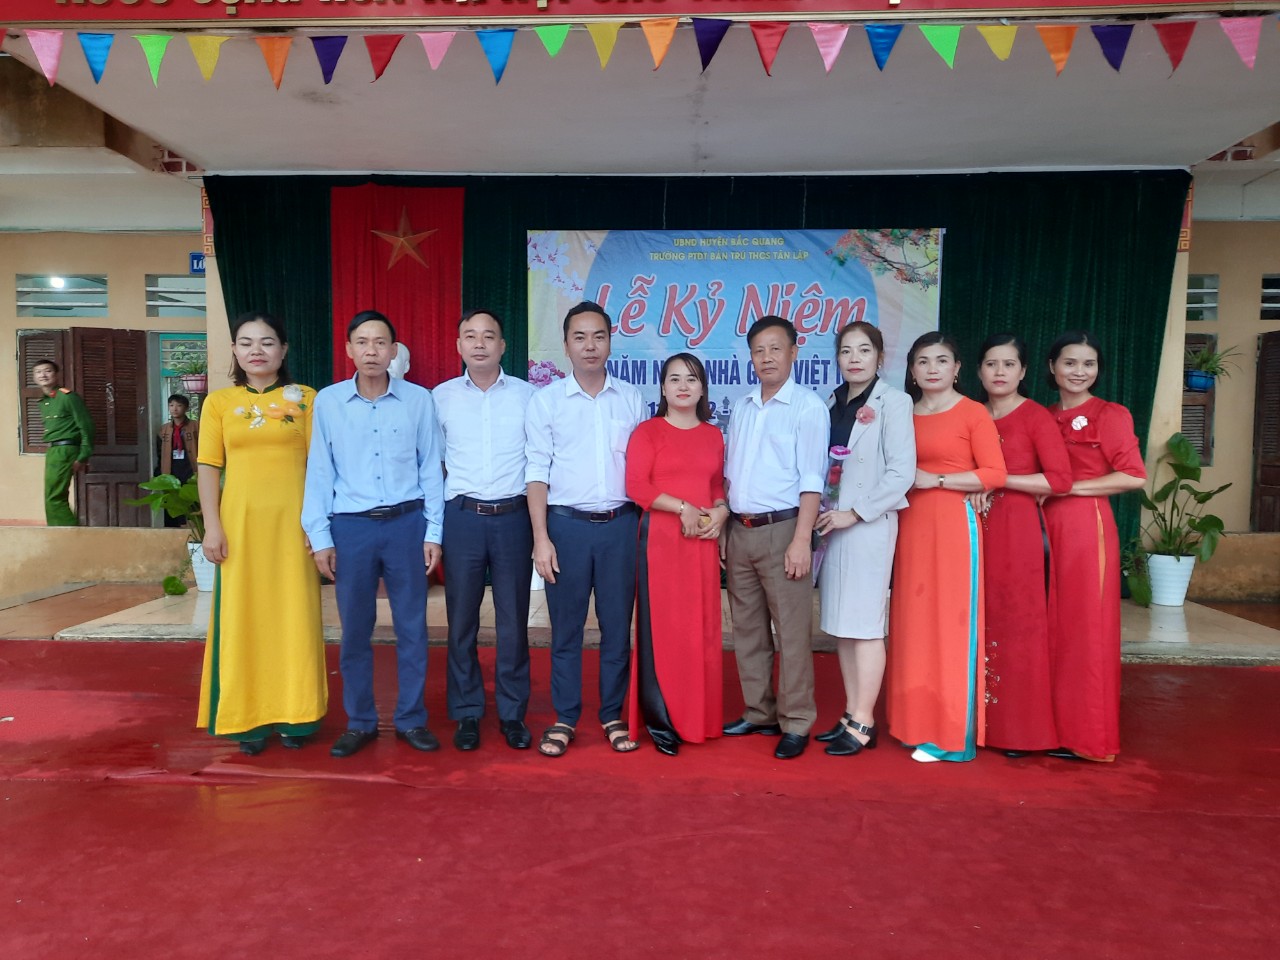 Trường phổ thông dân tốc bán trú THCS Tân Lập tổ chức kỷ niệm 40 năm ngày Nhà giáo Việt Nam  20/11/2982-20/11/2022